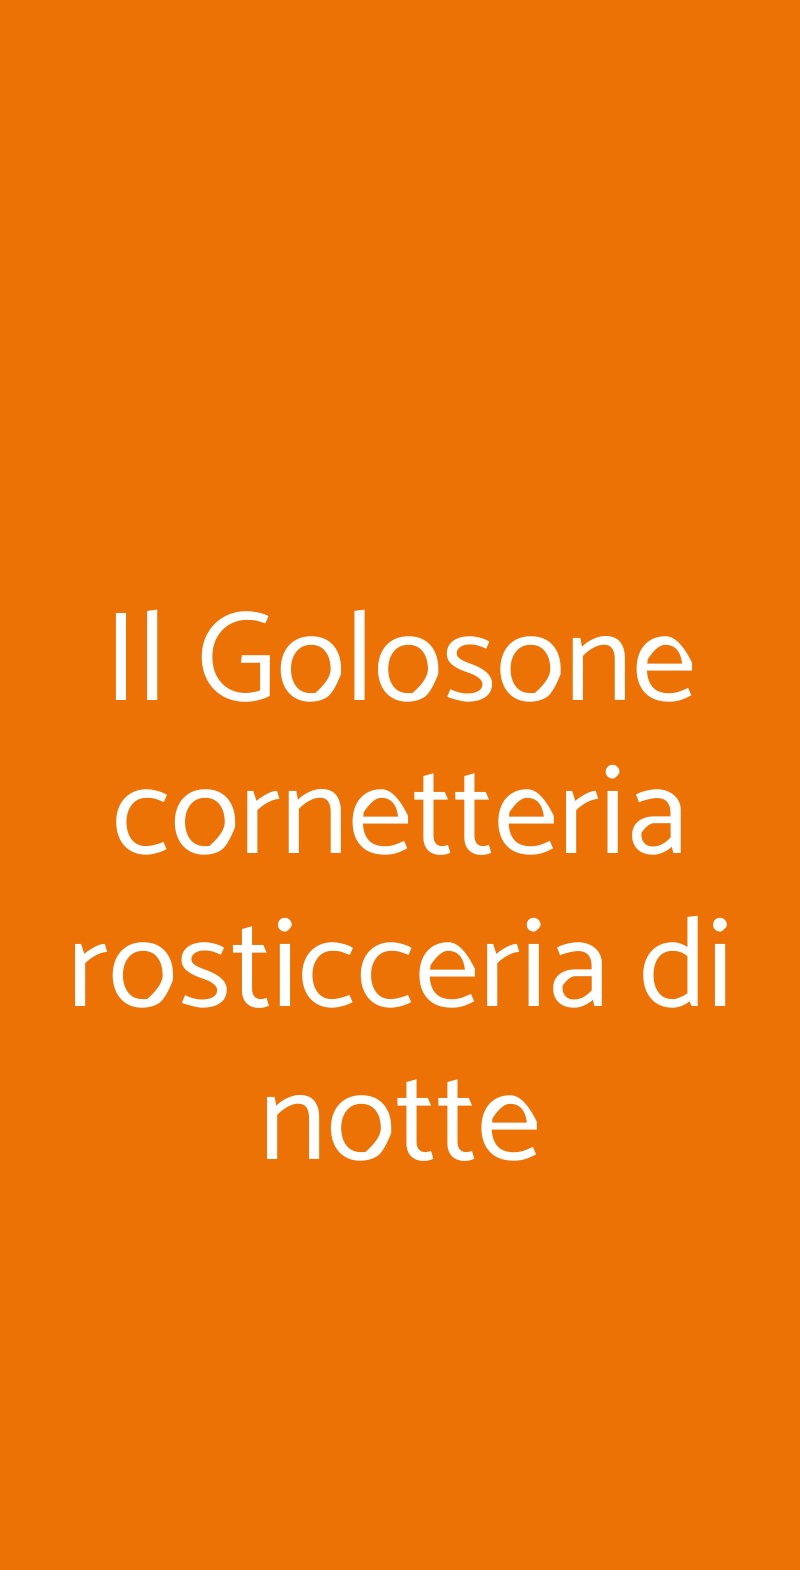 Il Golosone cornetteria rosticceria di notte Milano menù 1 pagina